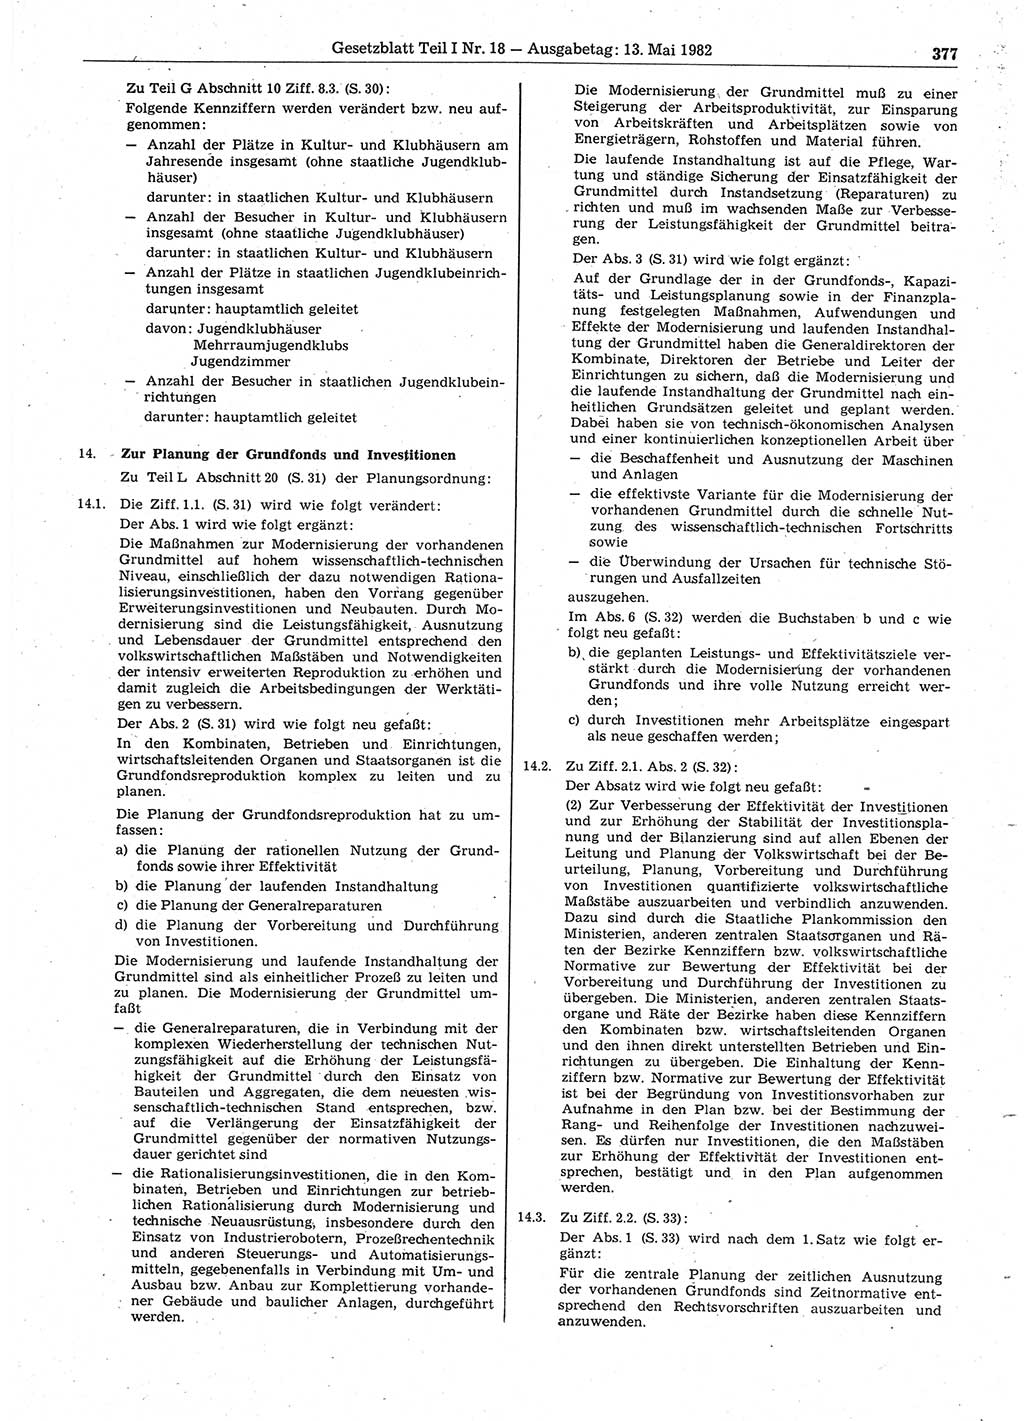 Gesetzblatt (GBl.) der Deutschen Demokratischen Republik (DDR) Teil Ⅰ 1982, Seite 377 (GBl. DDR Ⅰ 1982, S. 377)